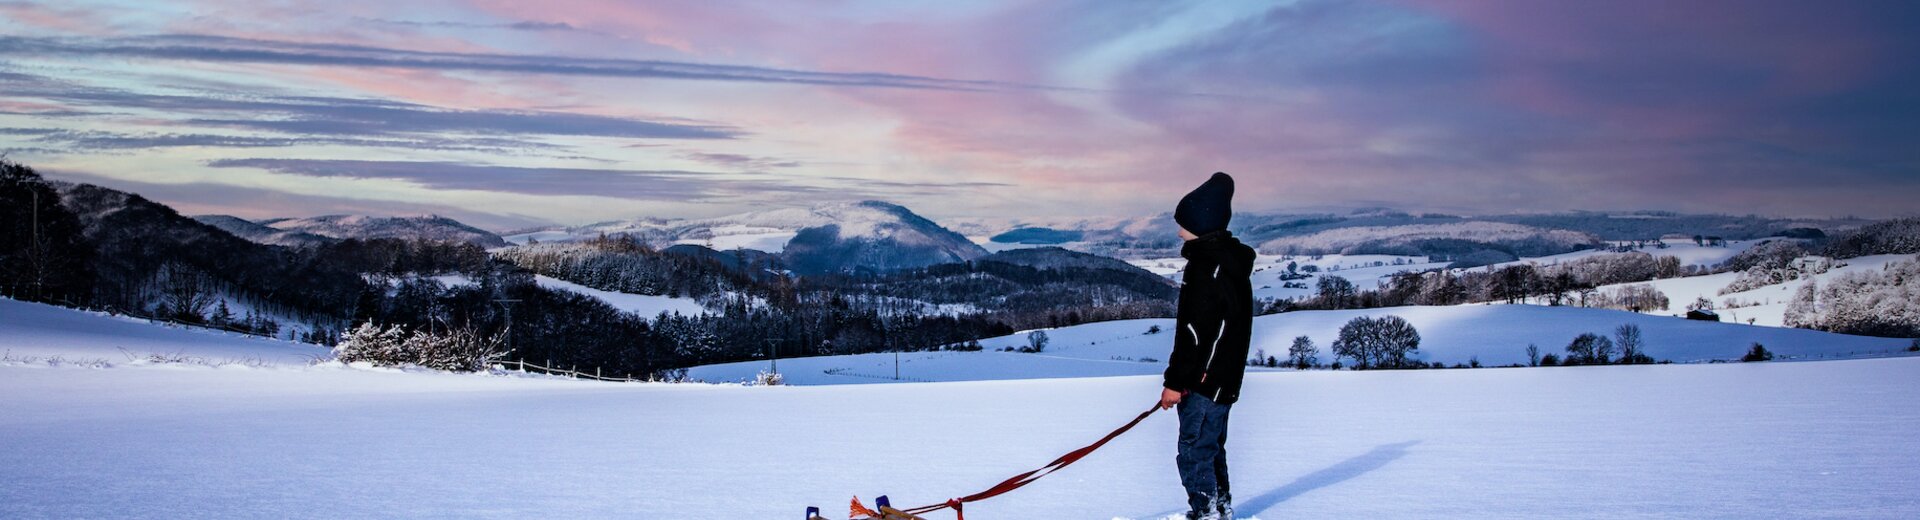 Winterlandschaft mit Skifahrer